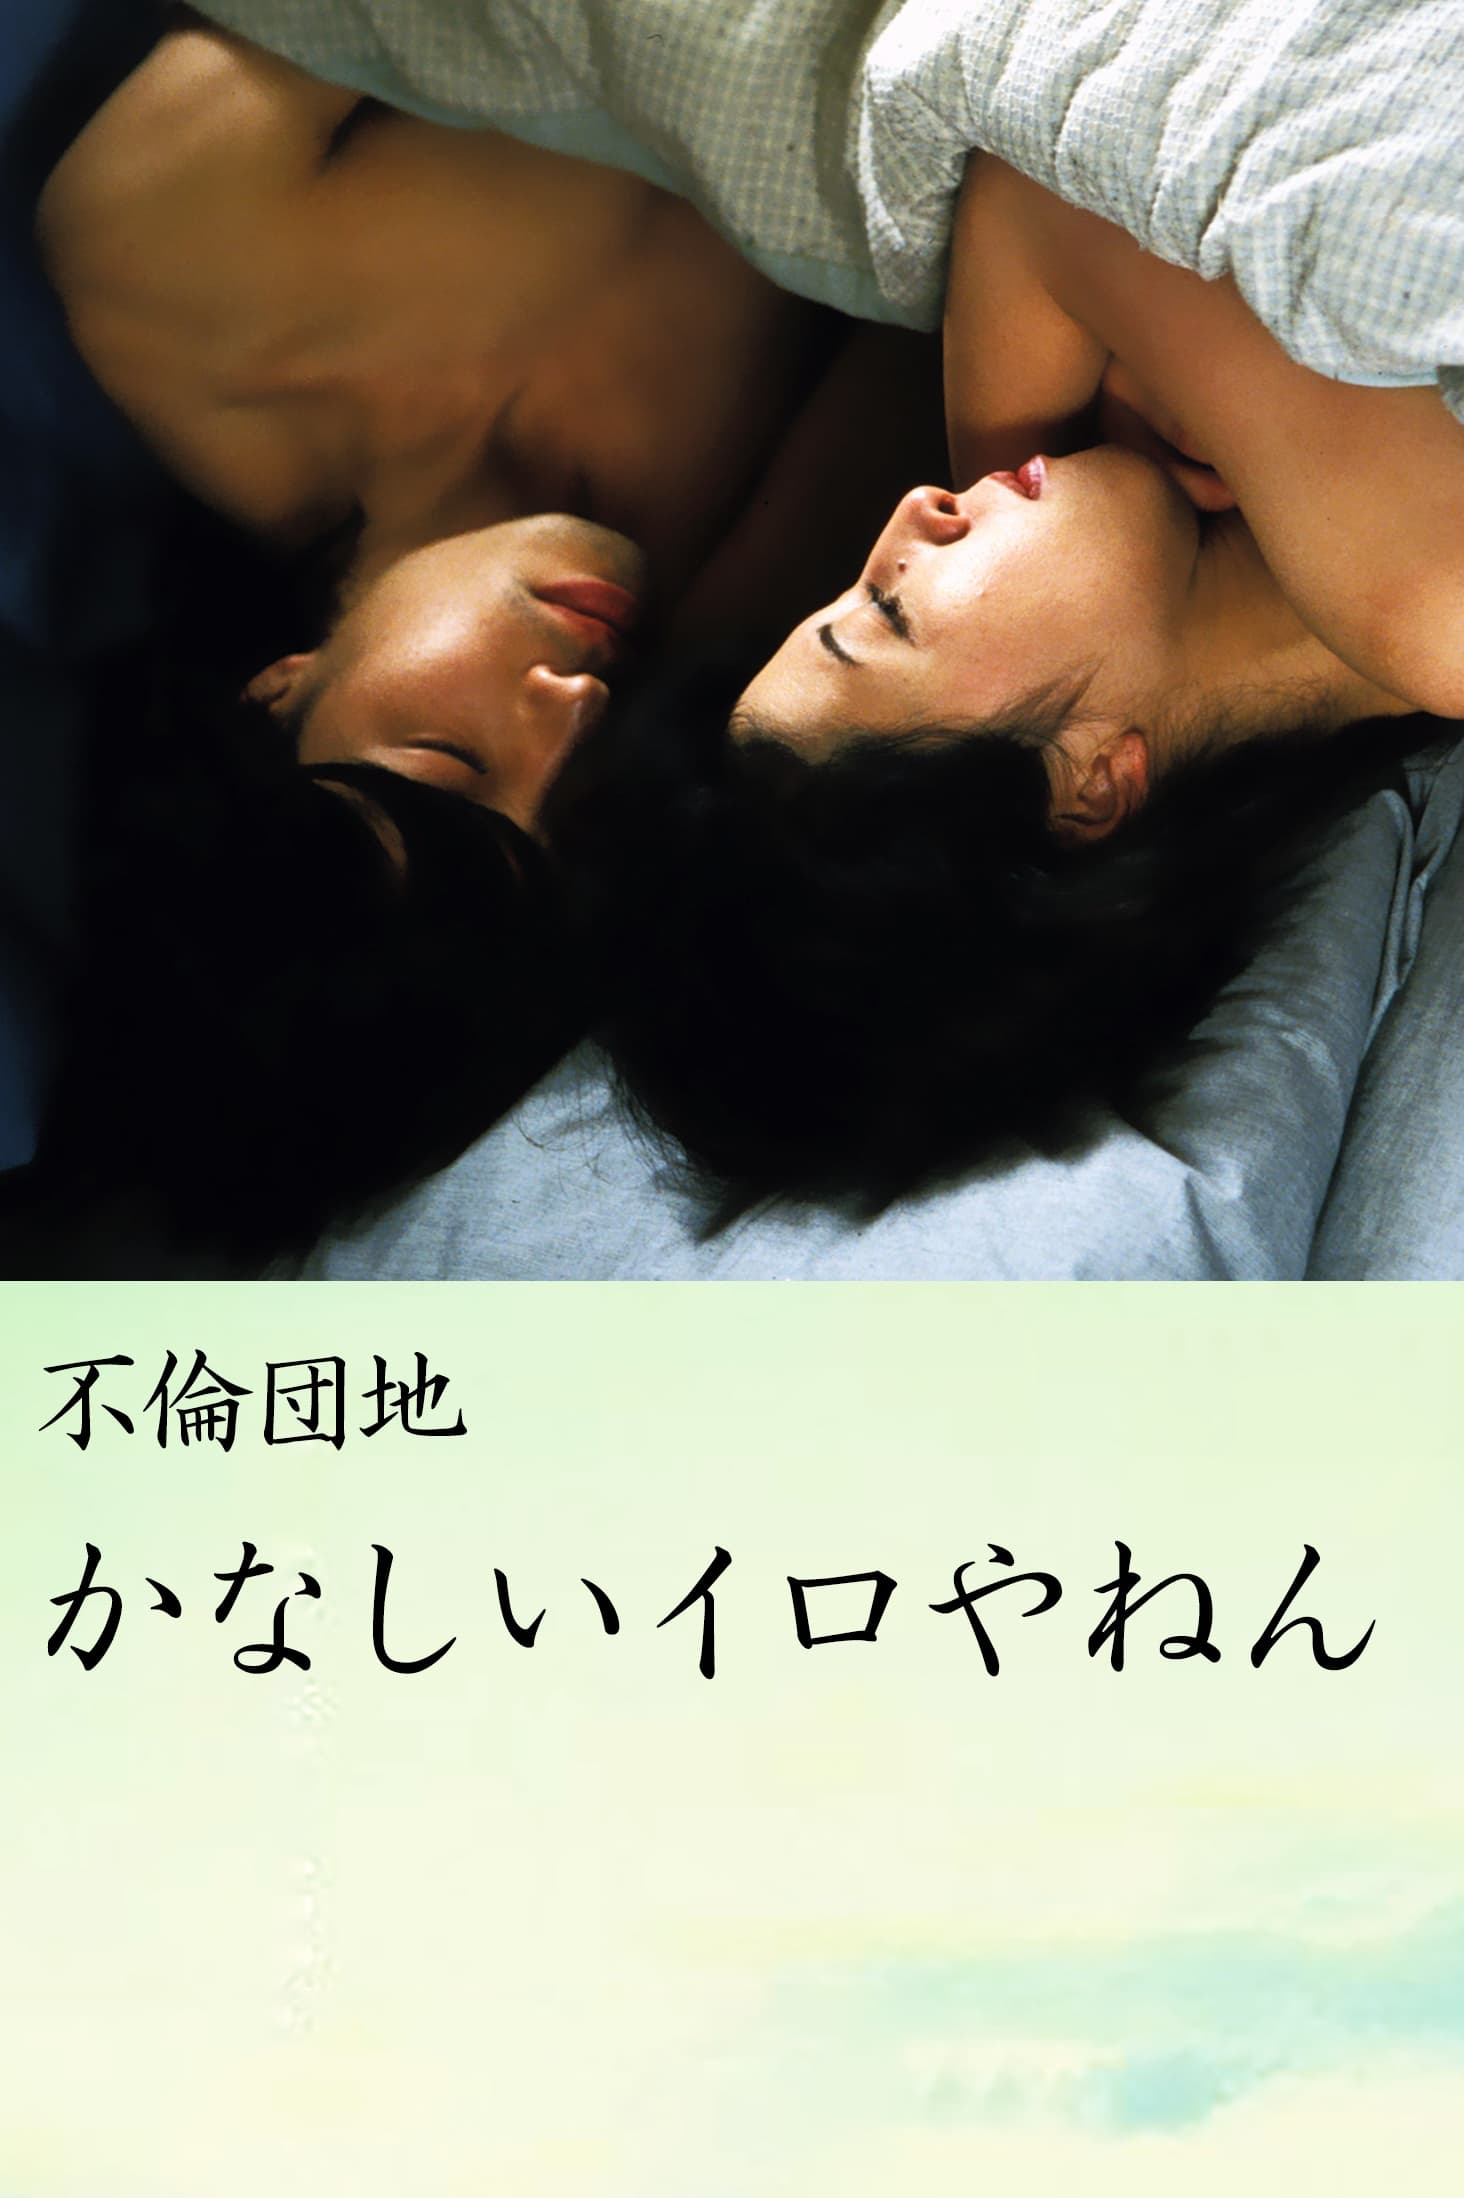 Osaka Erotic Love Story: Kusamura